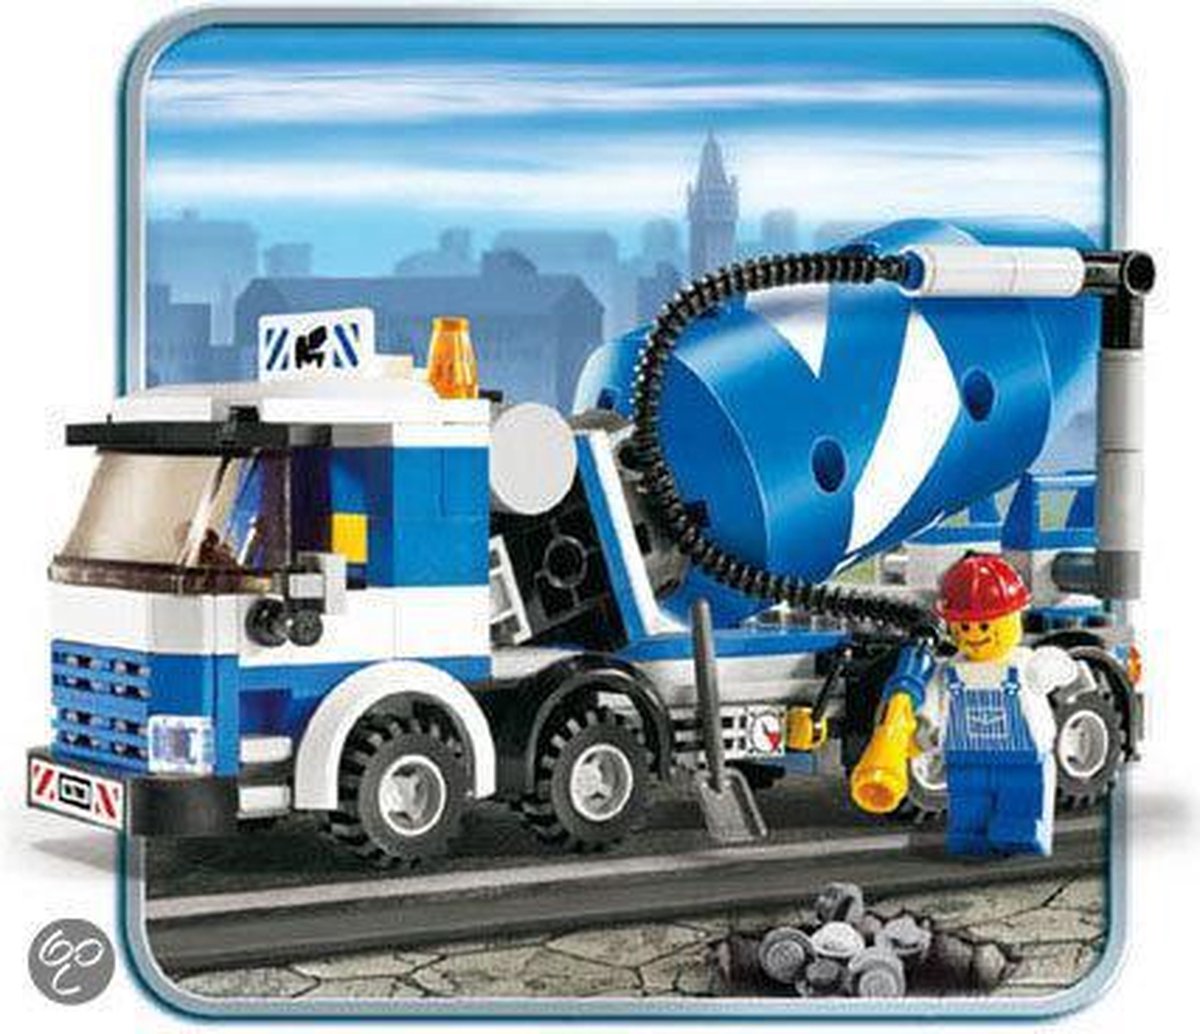 LEGO City Great Vehicles 60325 - Le Camion Bétonnière Jouet